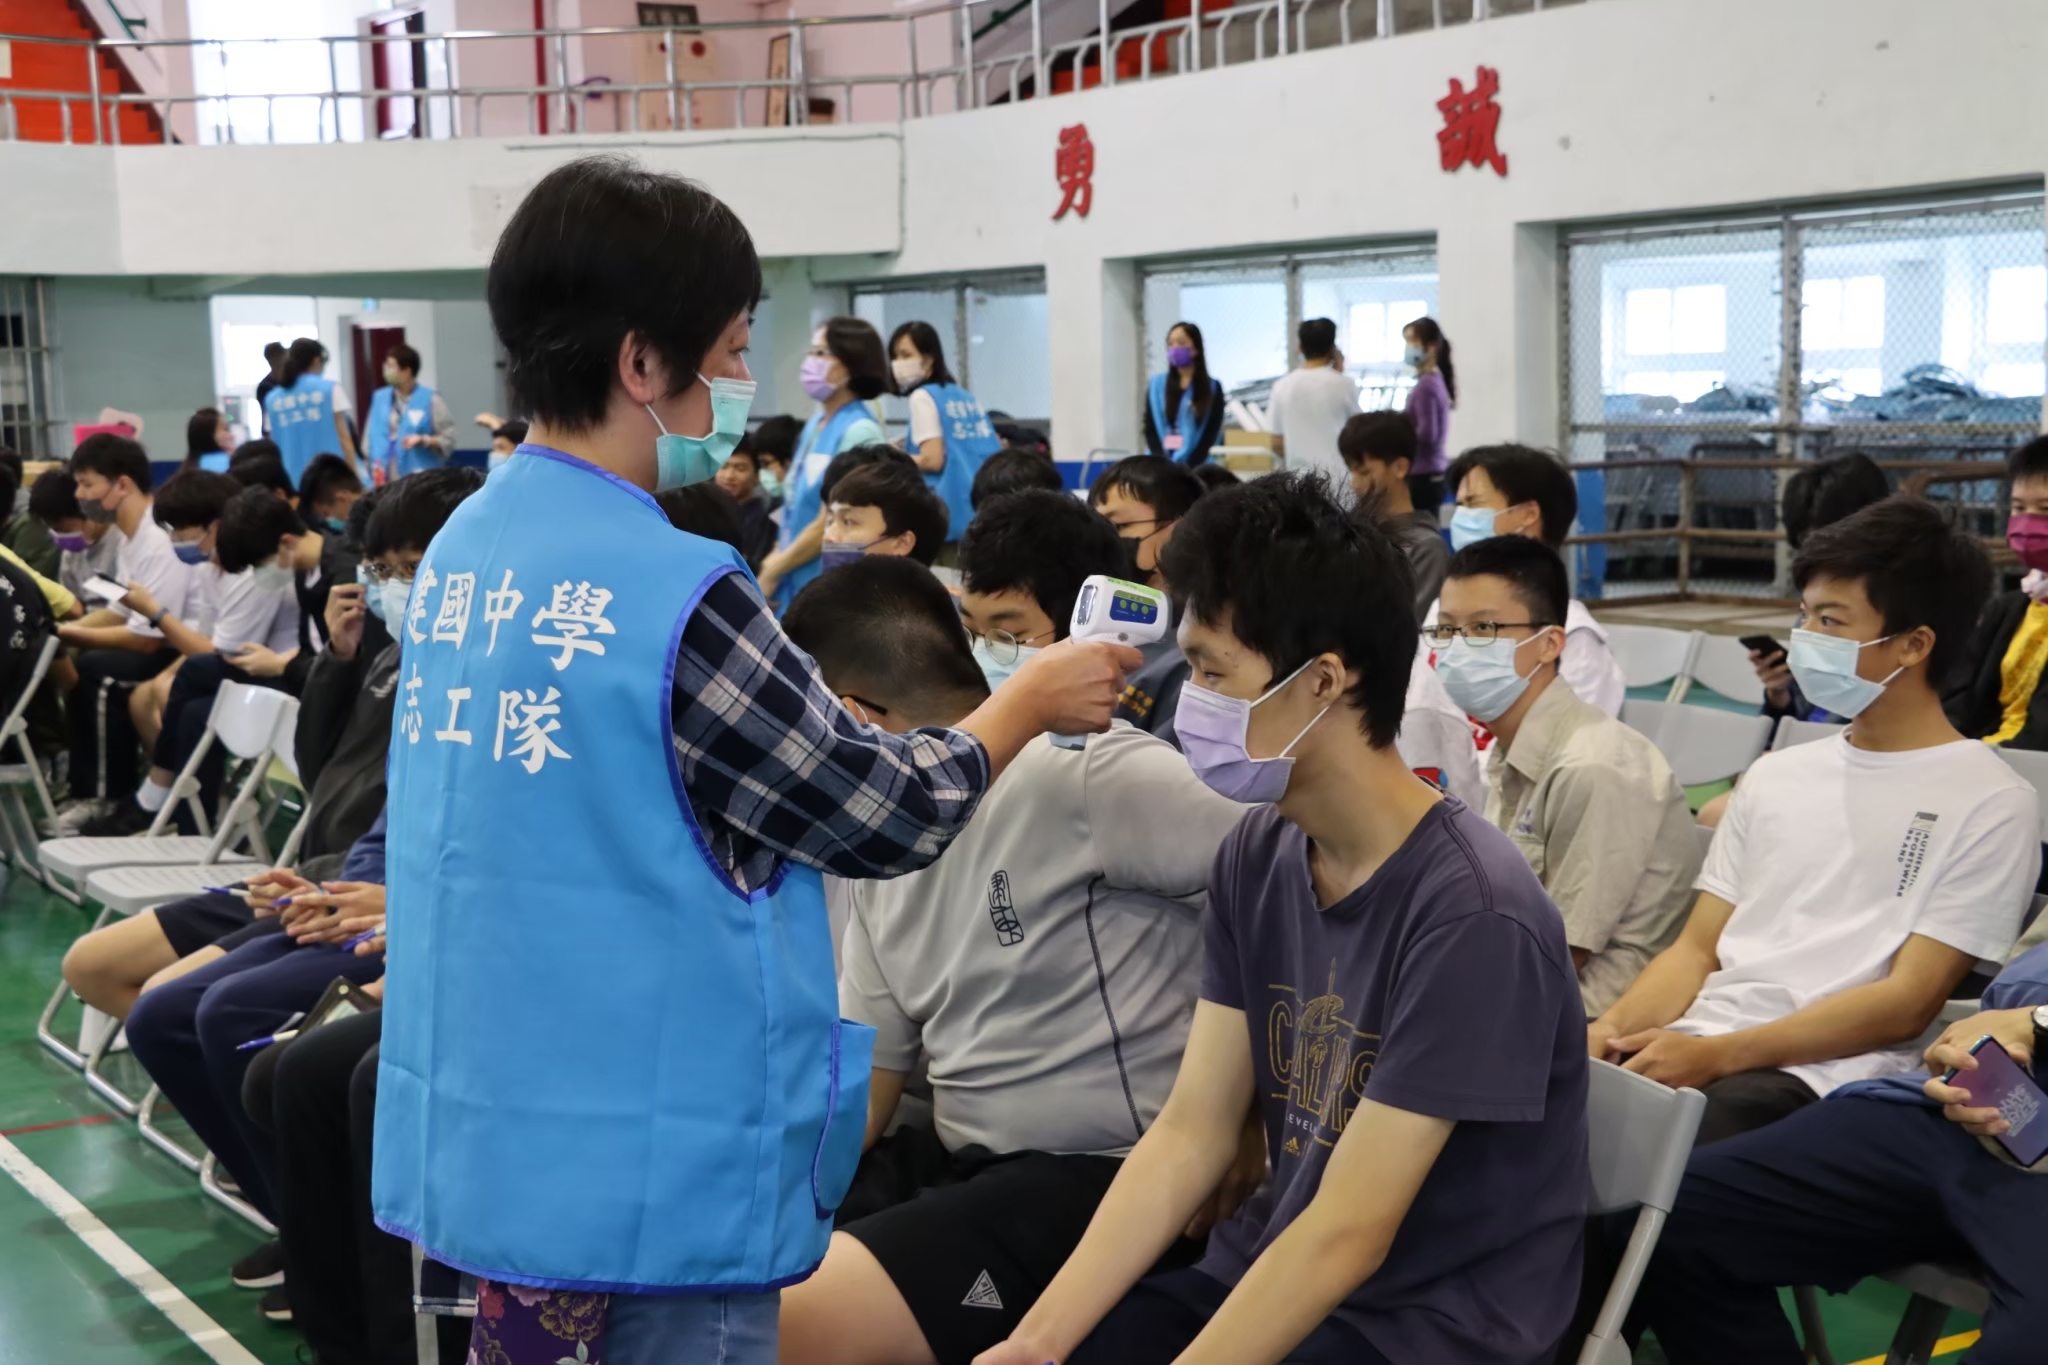 臺北市立建國高級中學學生家長會志工隊與學生互動照